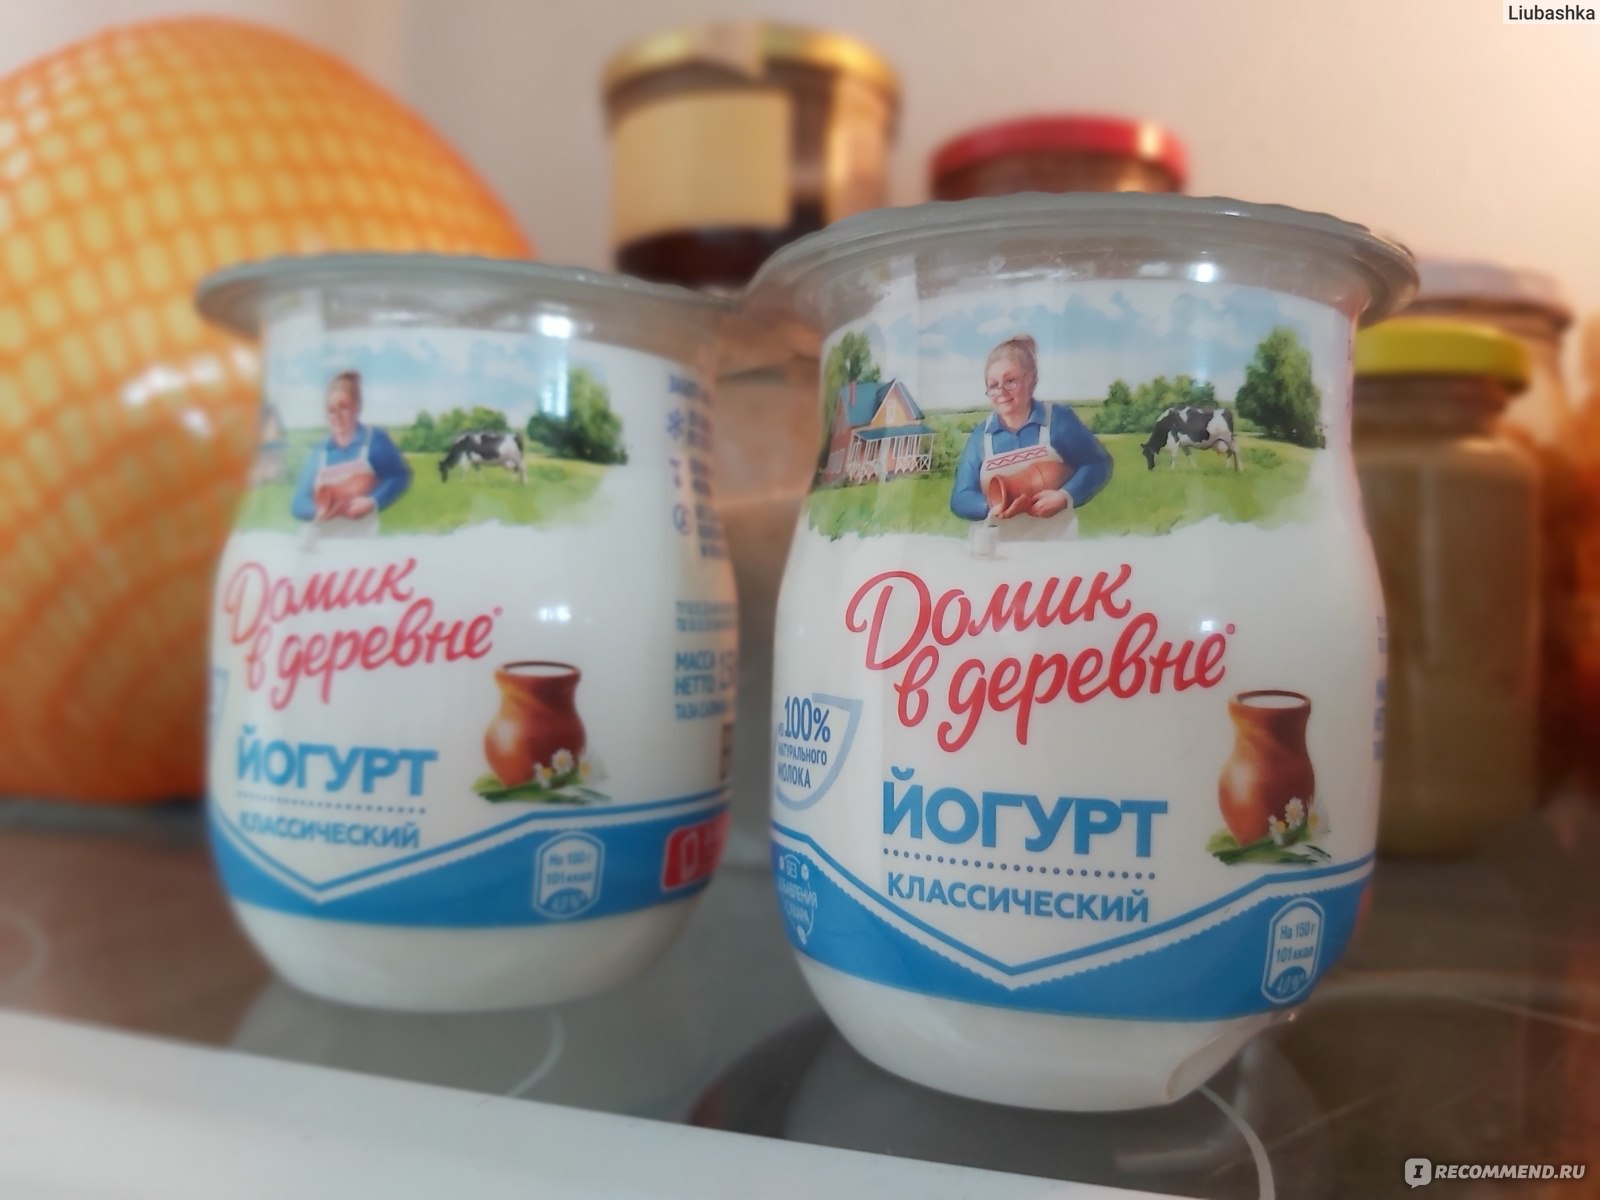 Термостатный йогурт Домик в деревне Классический фото